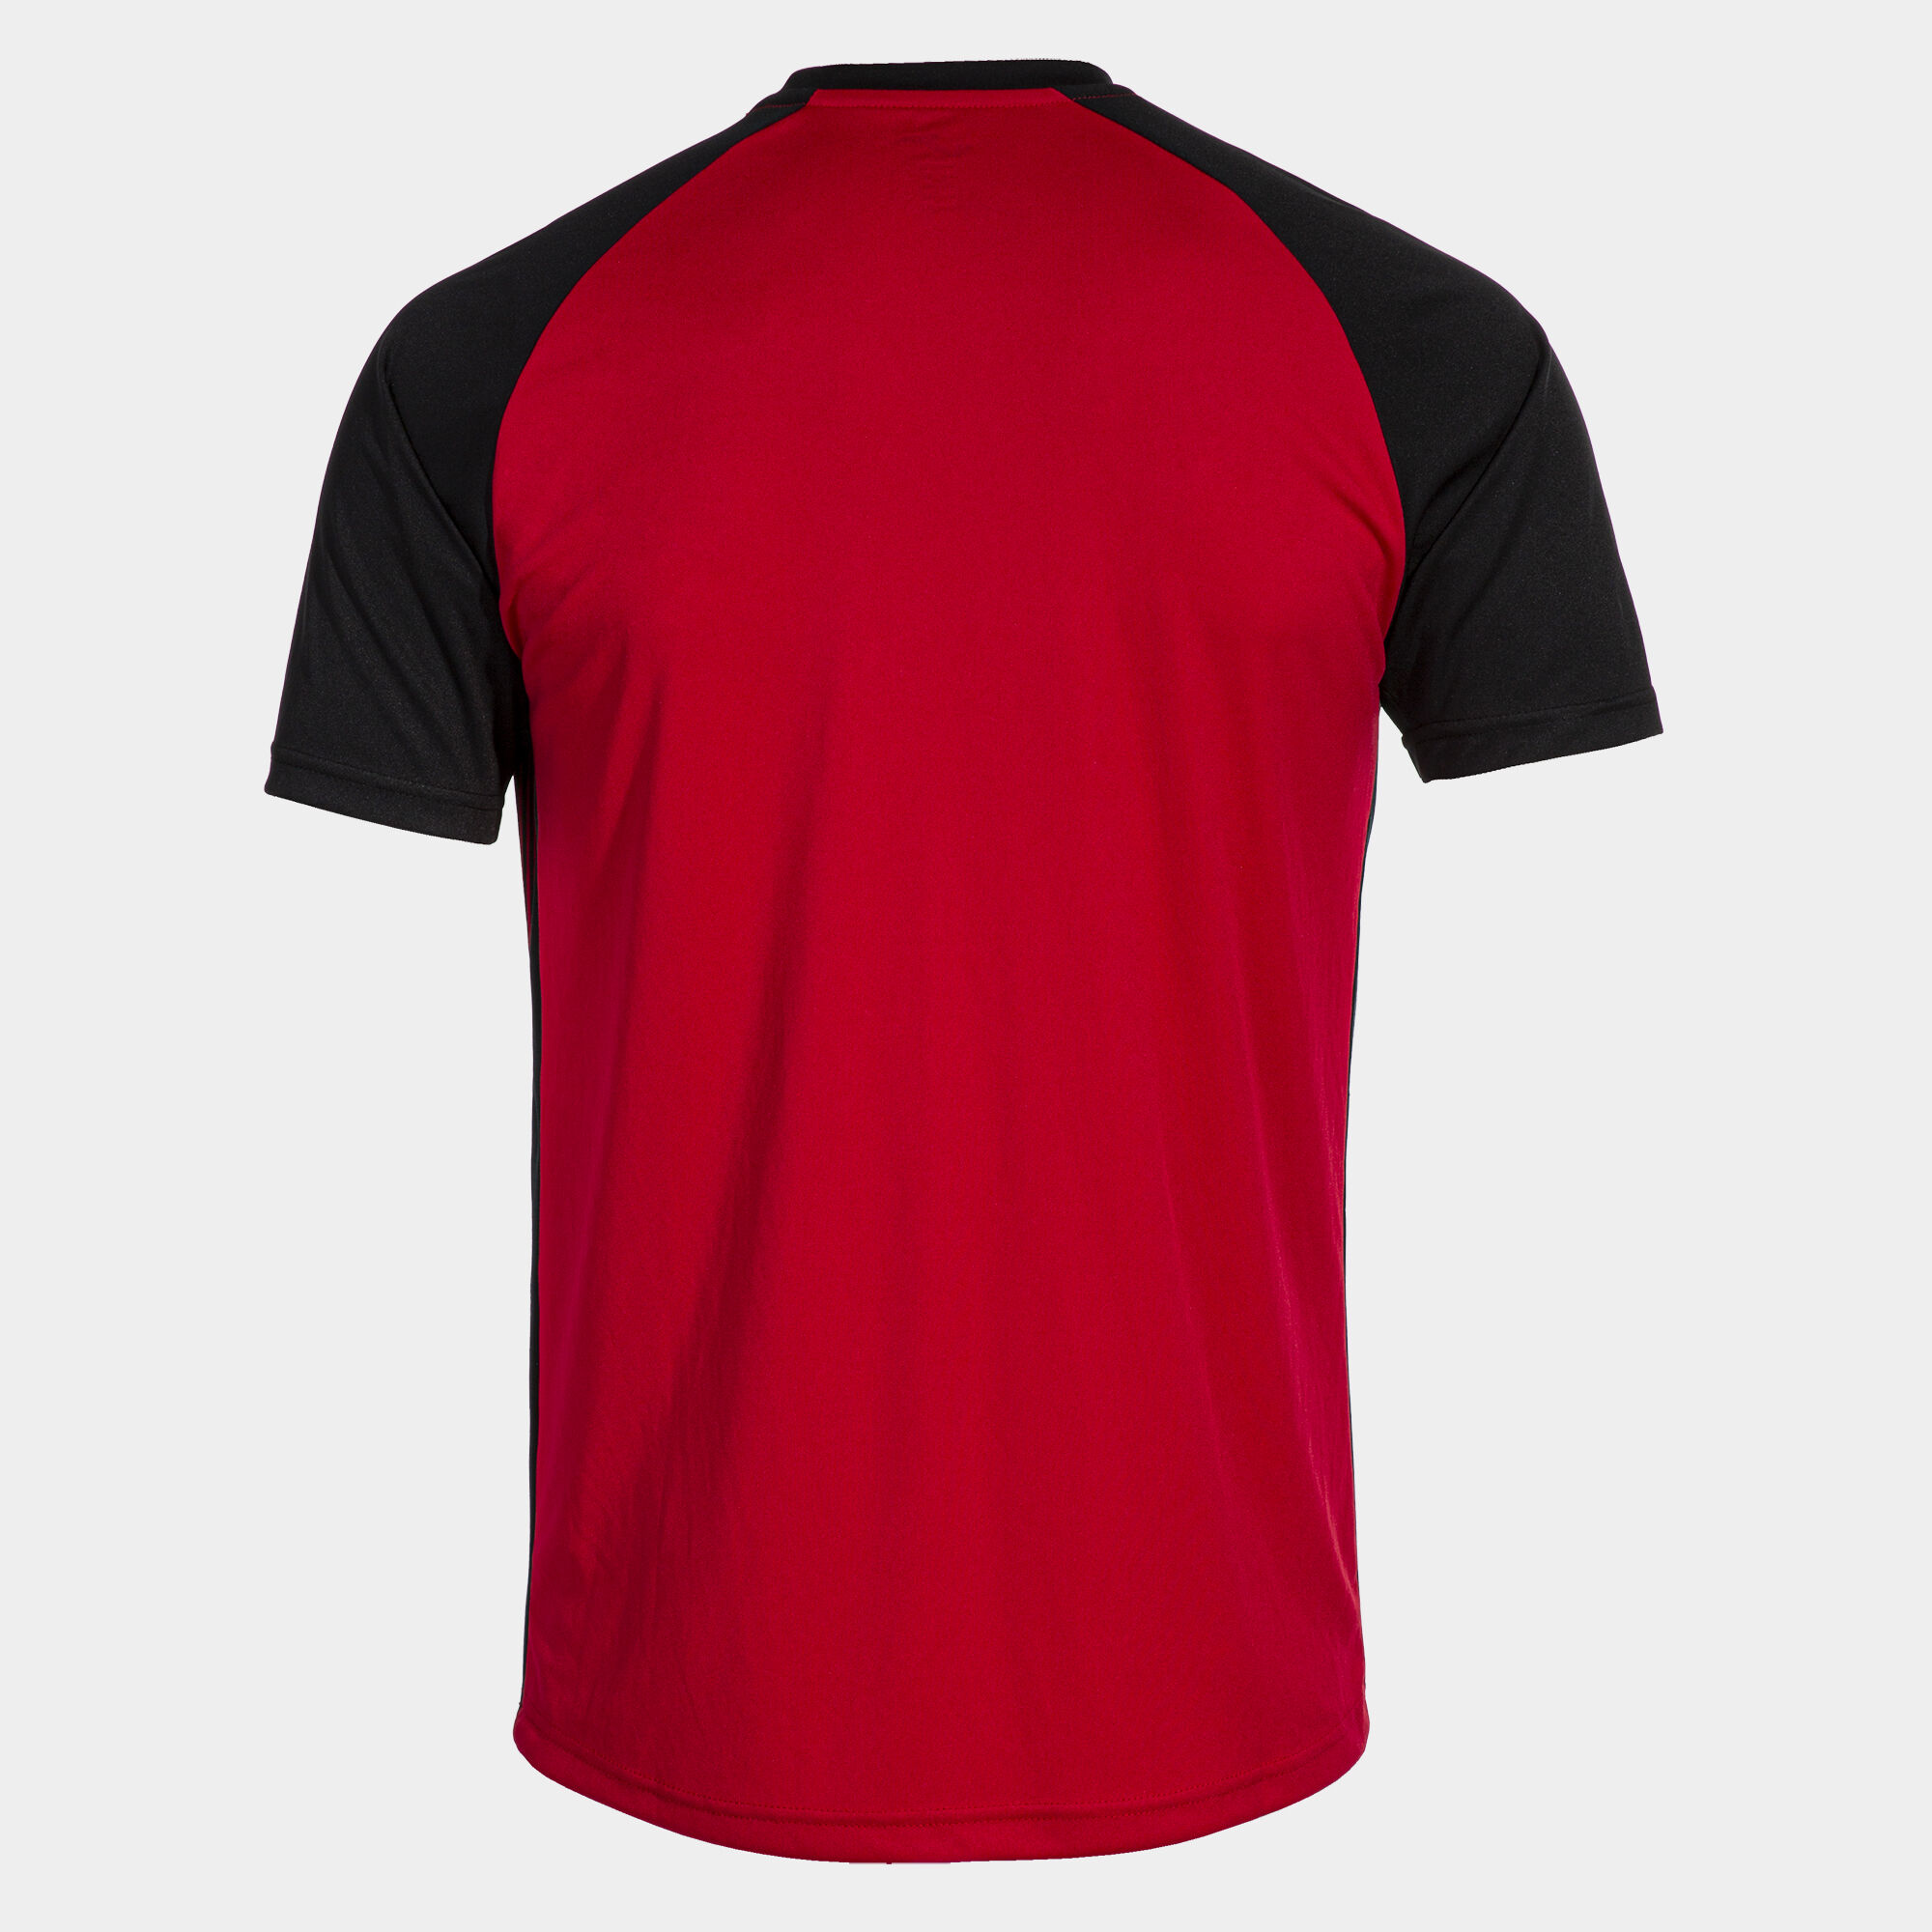 Shirt short sleeve man Tiger VI red black